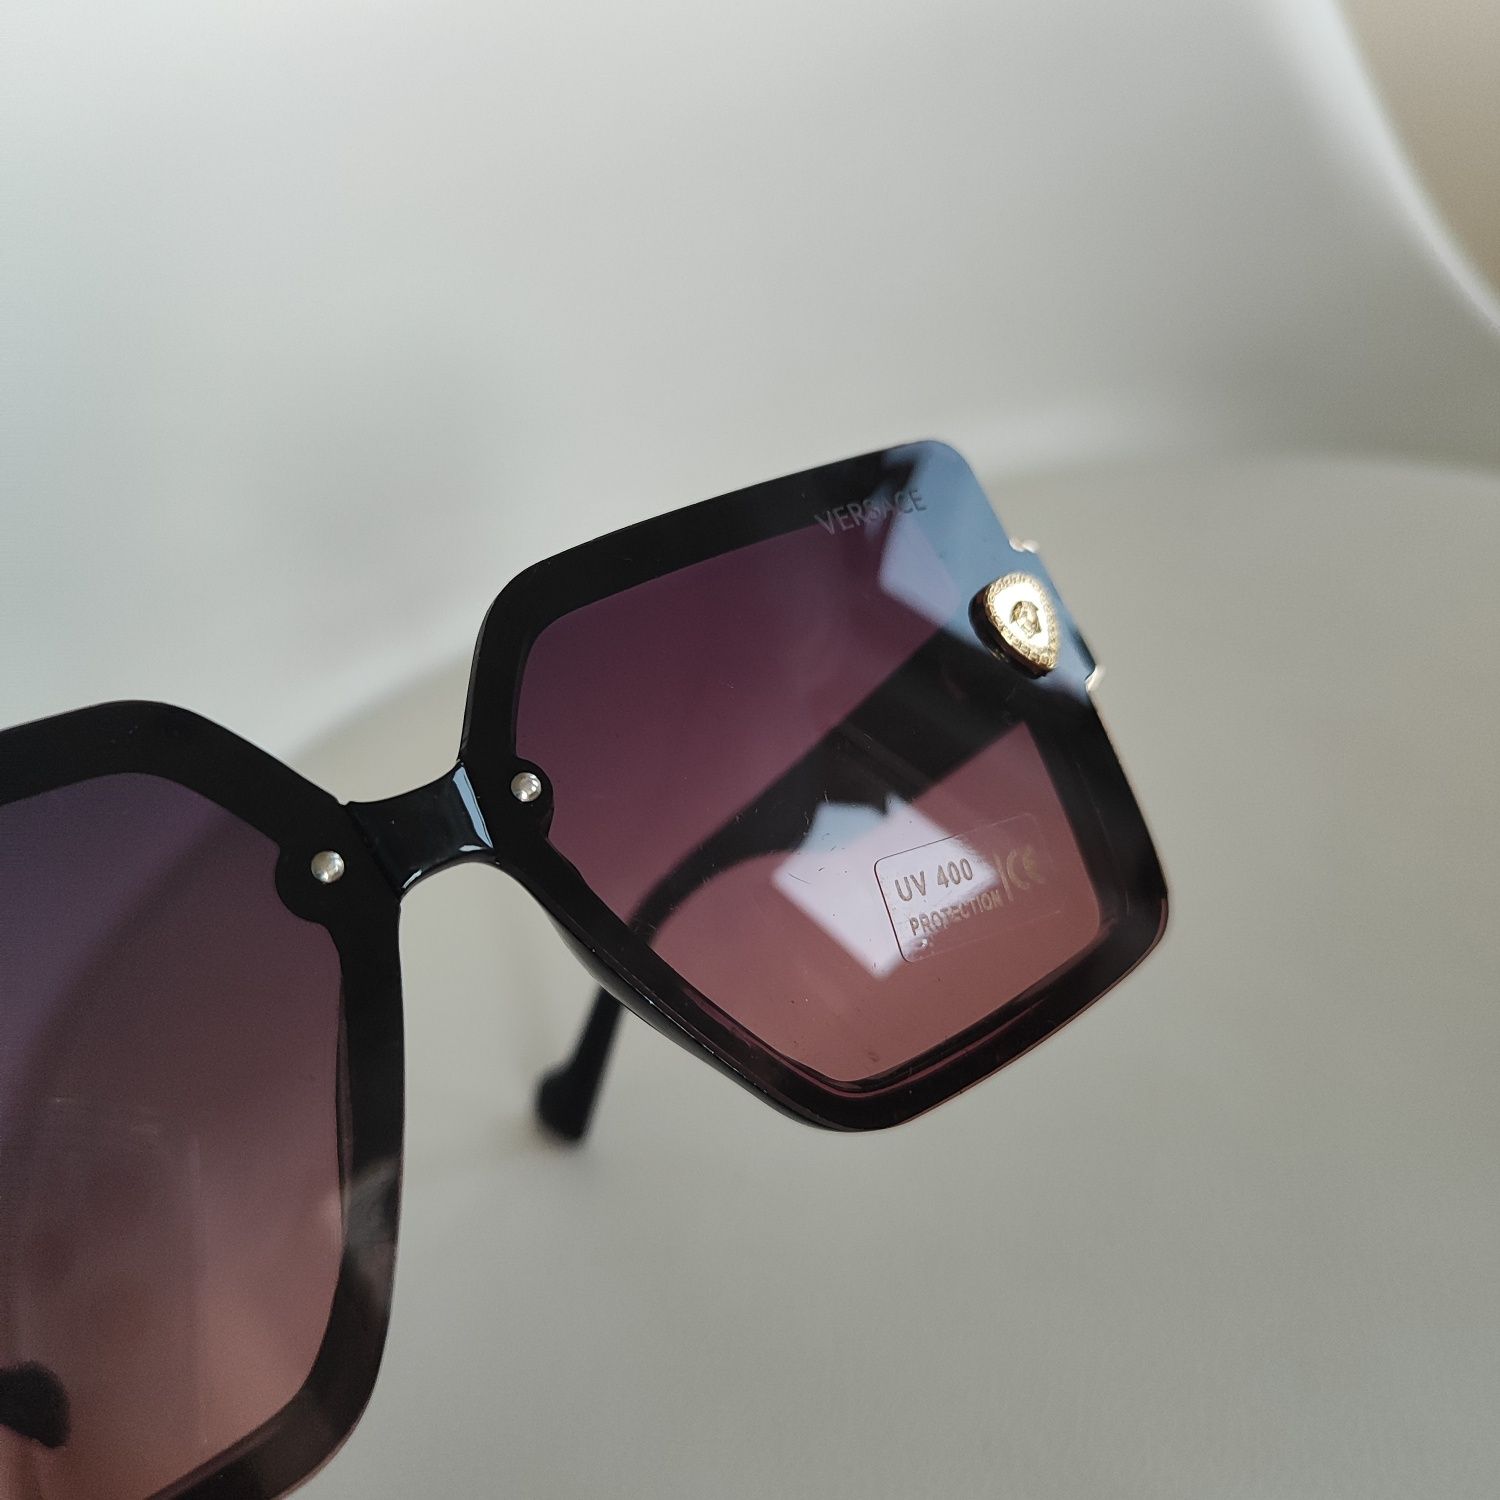 Okulary damskie okularki UV400 ochrona Versace brązowe różowe